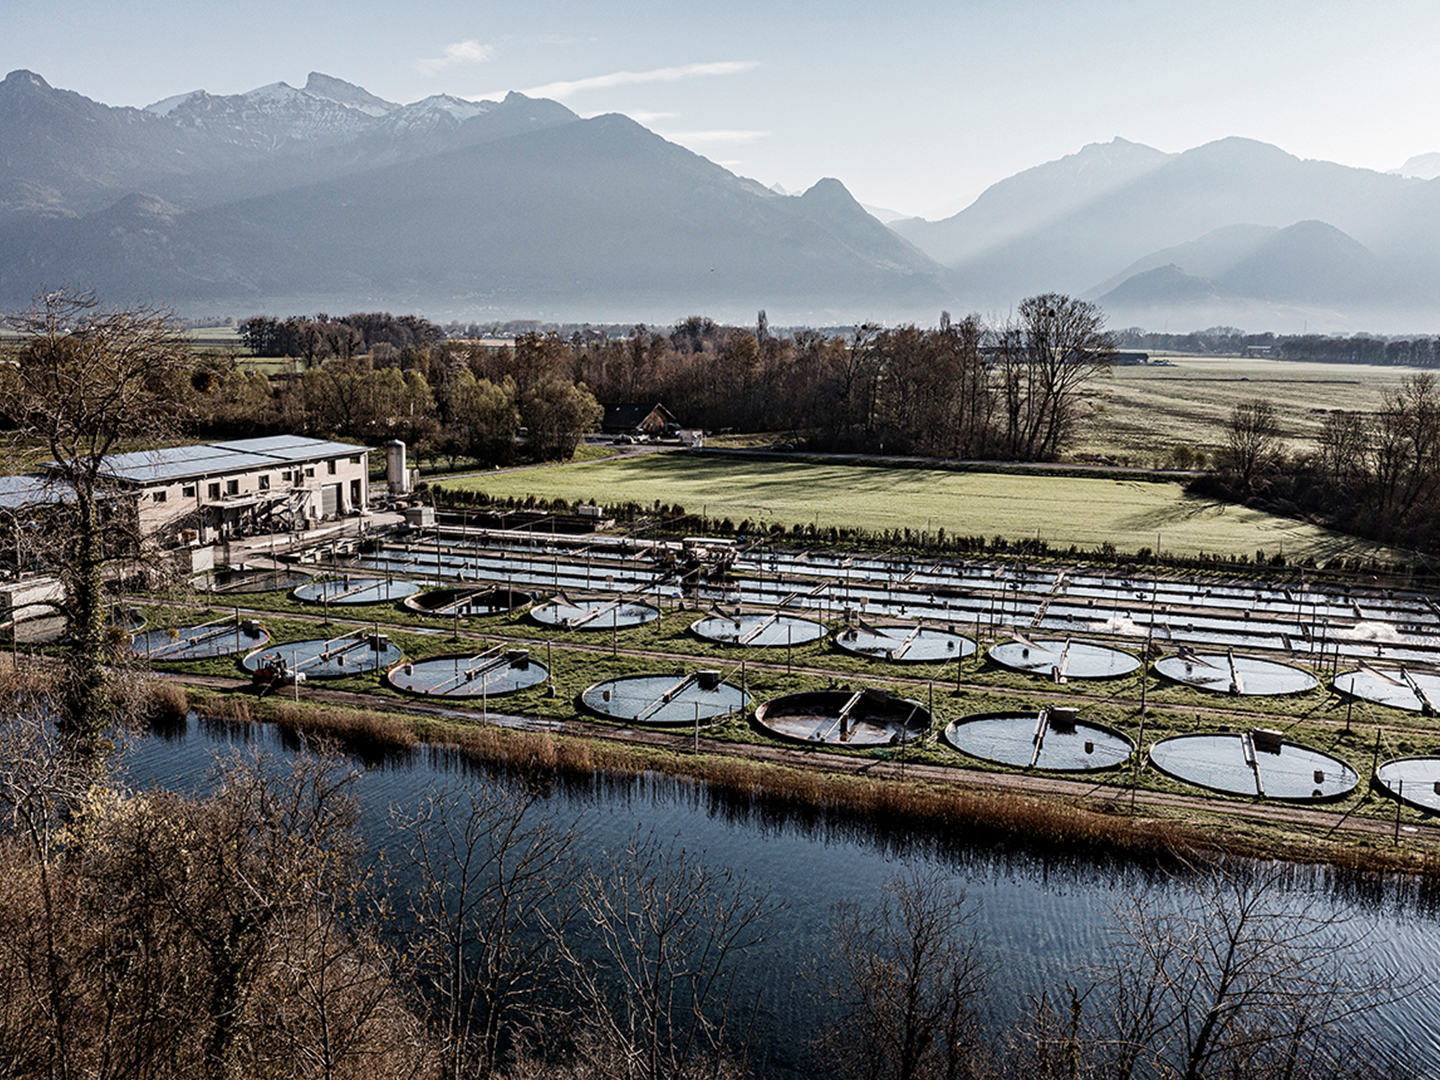 Grösste Schweizer Forellenzucht, Pisciculture de Vionnaz